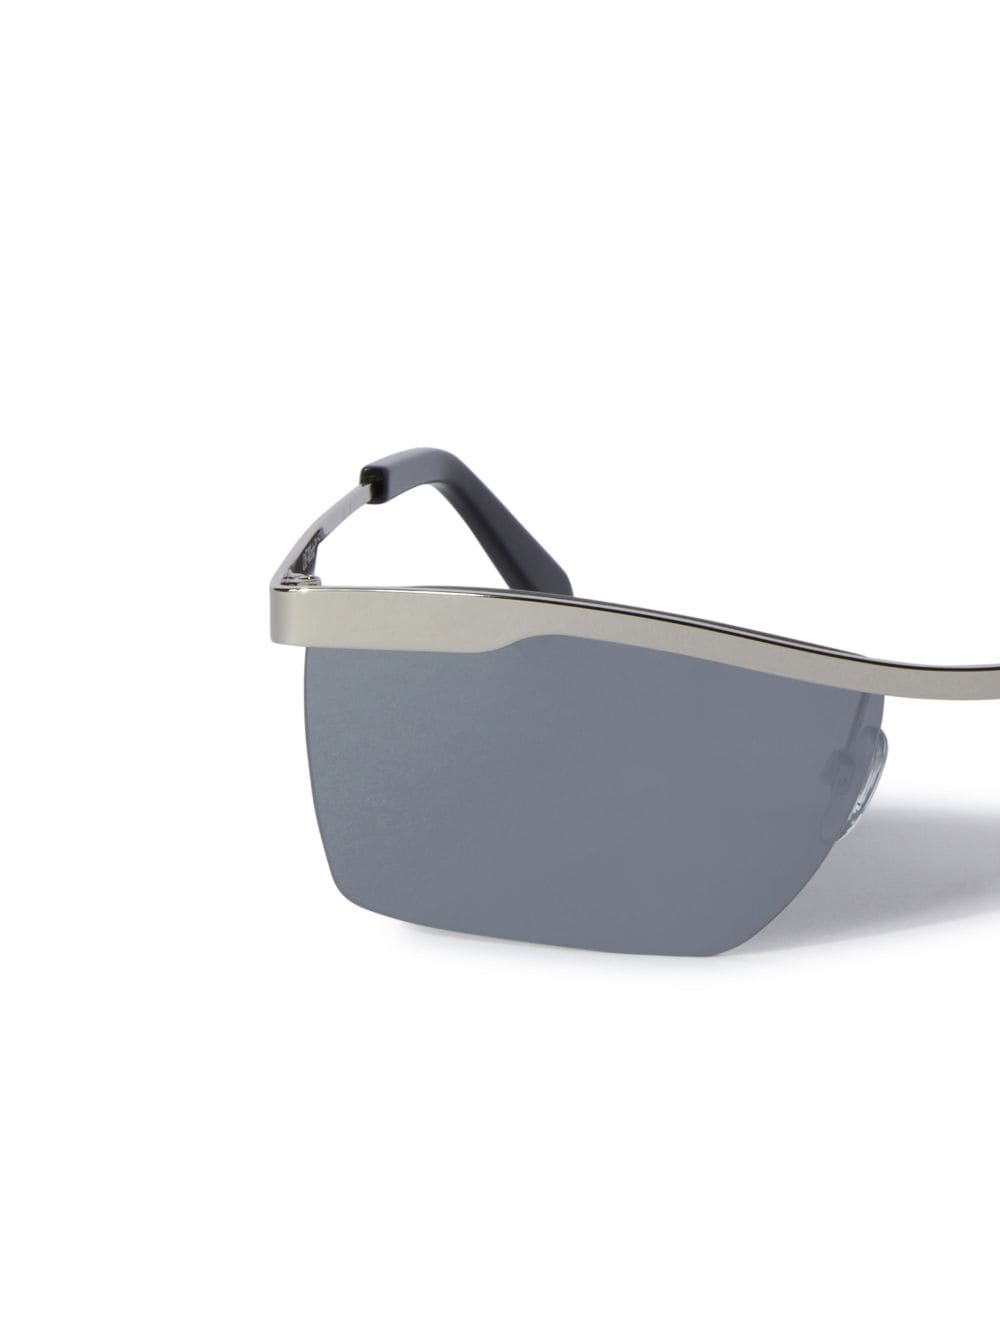 Off-White Men's Rimini Metal Rectangle Sunglasses, Black, Men's, Sunglasses Square Sunglasses